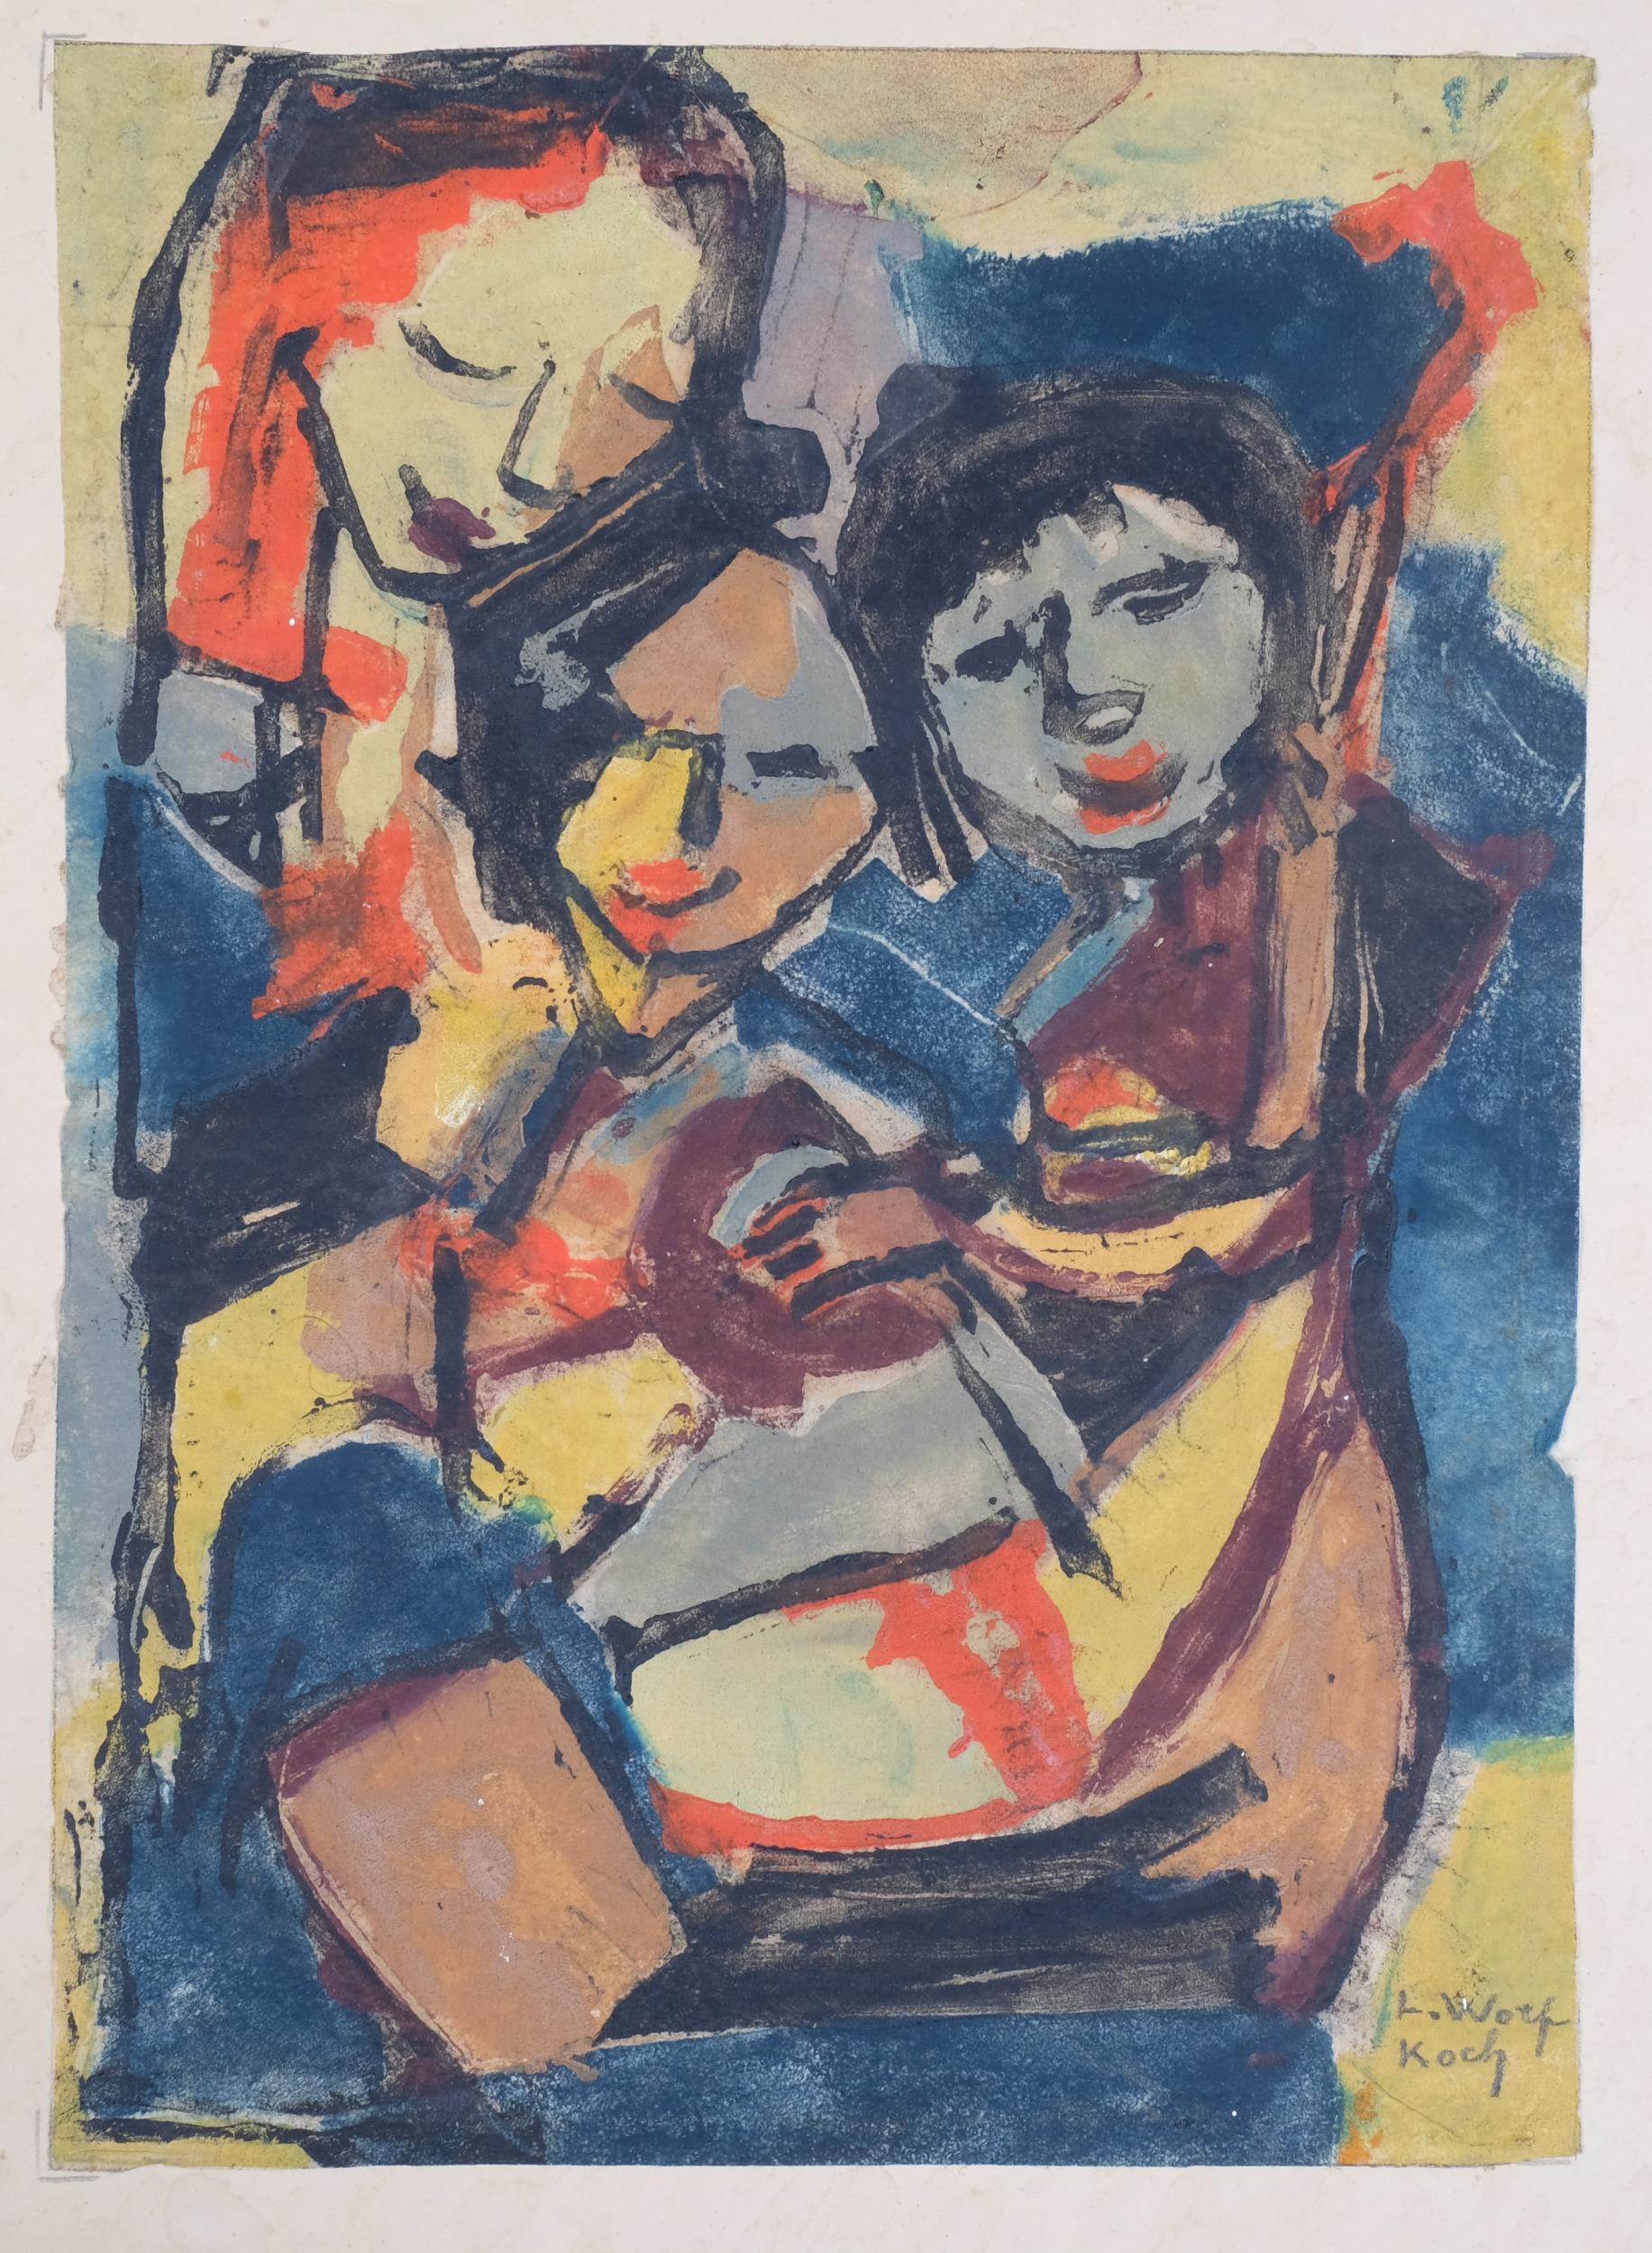 Lotte Wolf-Koch (1909 - 1977), 3 figures, watercolour, signed, 28cm x 20cm, unframed Image in